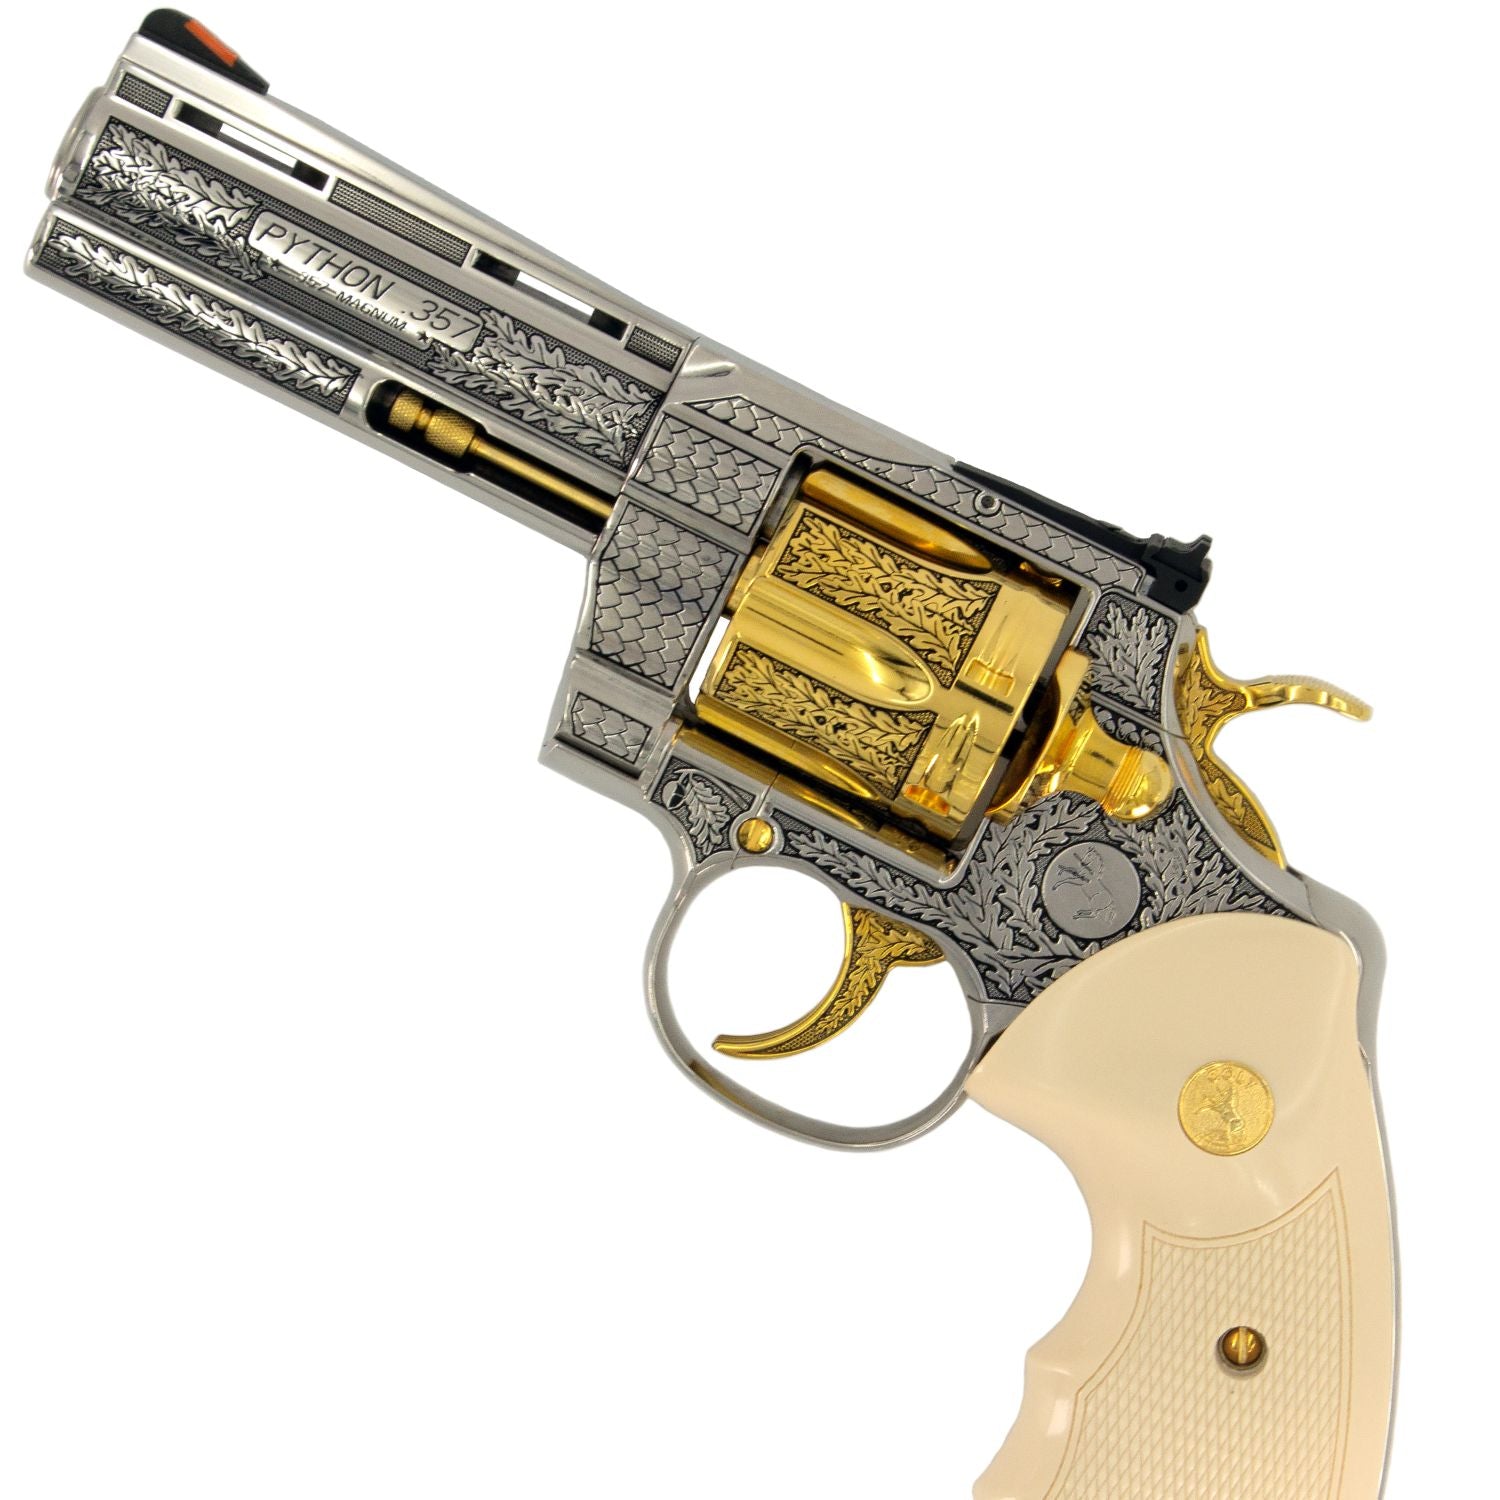 Colt Python, 4", .357 Magnum, 24 karat Gold Engraved High Polished Stainless Steel California Compliant, SKU: 7010466955366,  Gold Gun,  Gold Firearm, Engraved Firearm  